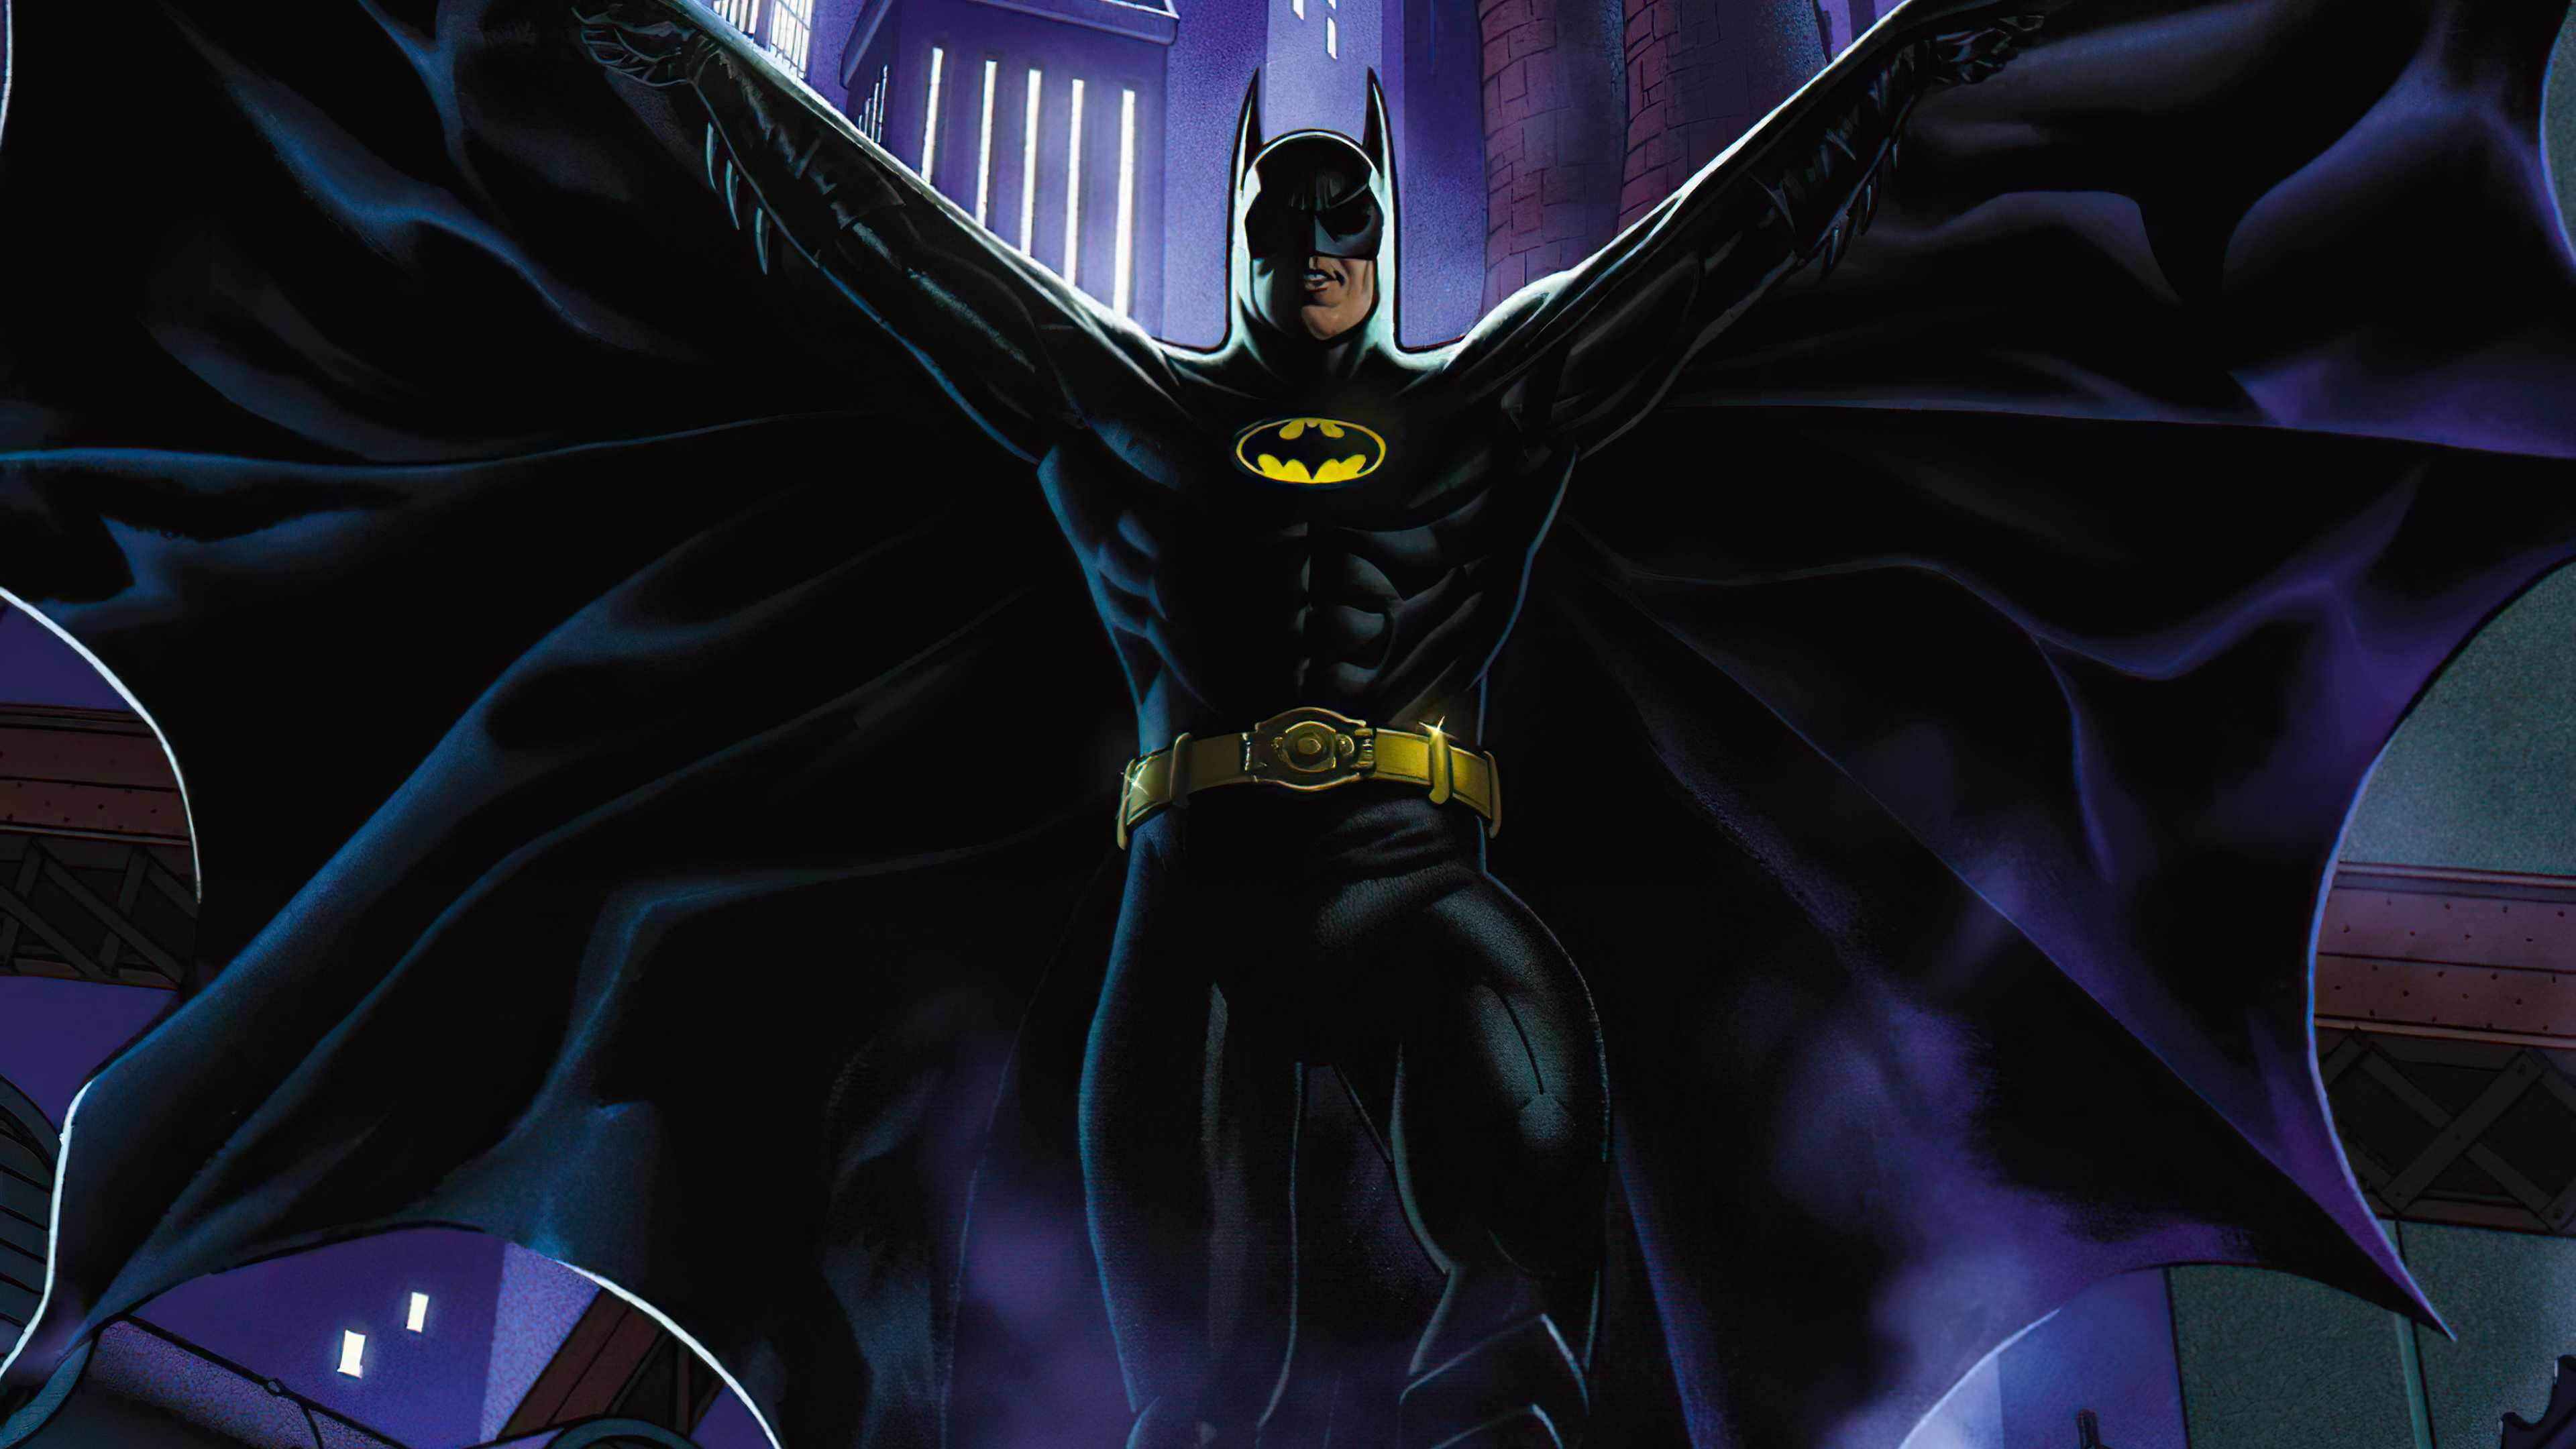 Hình nền 4k siêu anh hùng Batman: Choáng ngợp bởi độ chi tiết 4K của hình nền siêu anh hùng Batman. Mô phỏng chân dung tuyệt đẹp về người hùng của Gotham, hình nền này đảm bảo sẽ đem lại cho bạn thêm nhiều niềm vui trong khi sử dụng máy tính.